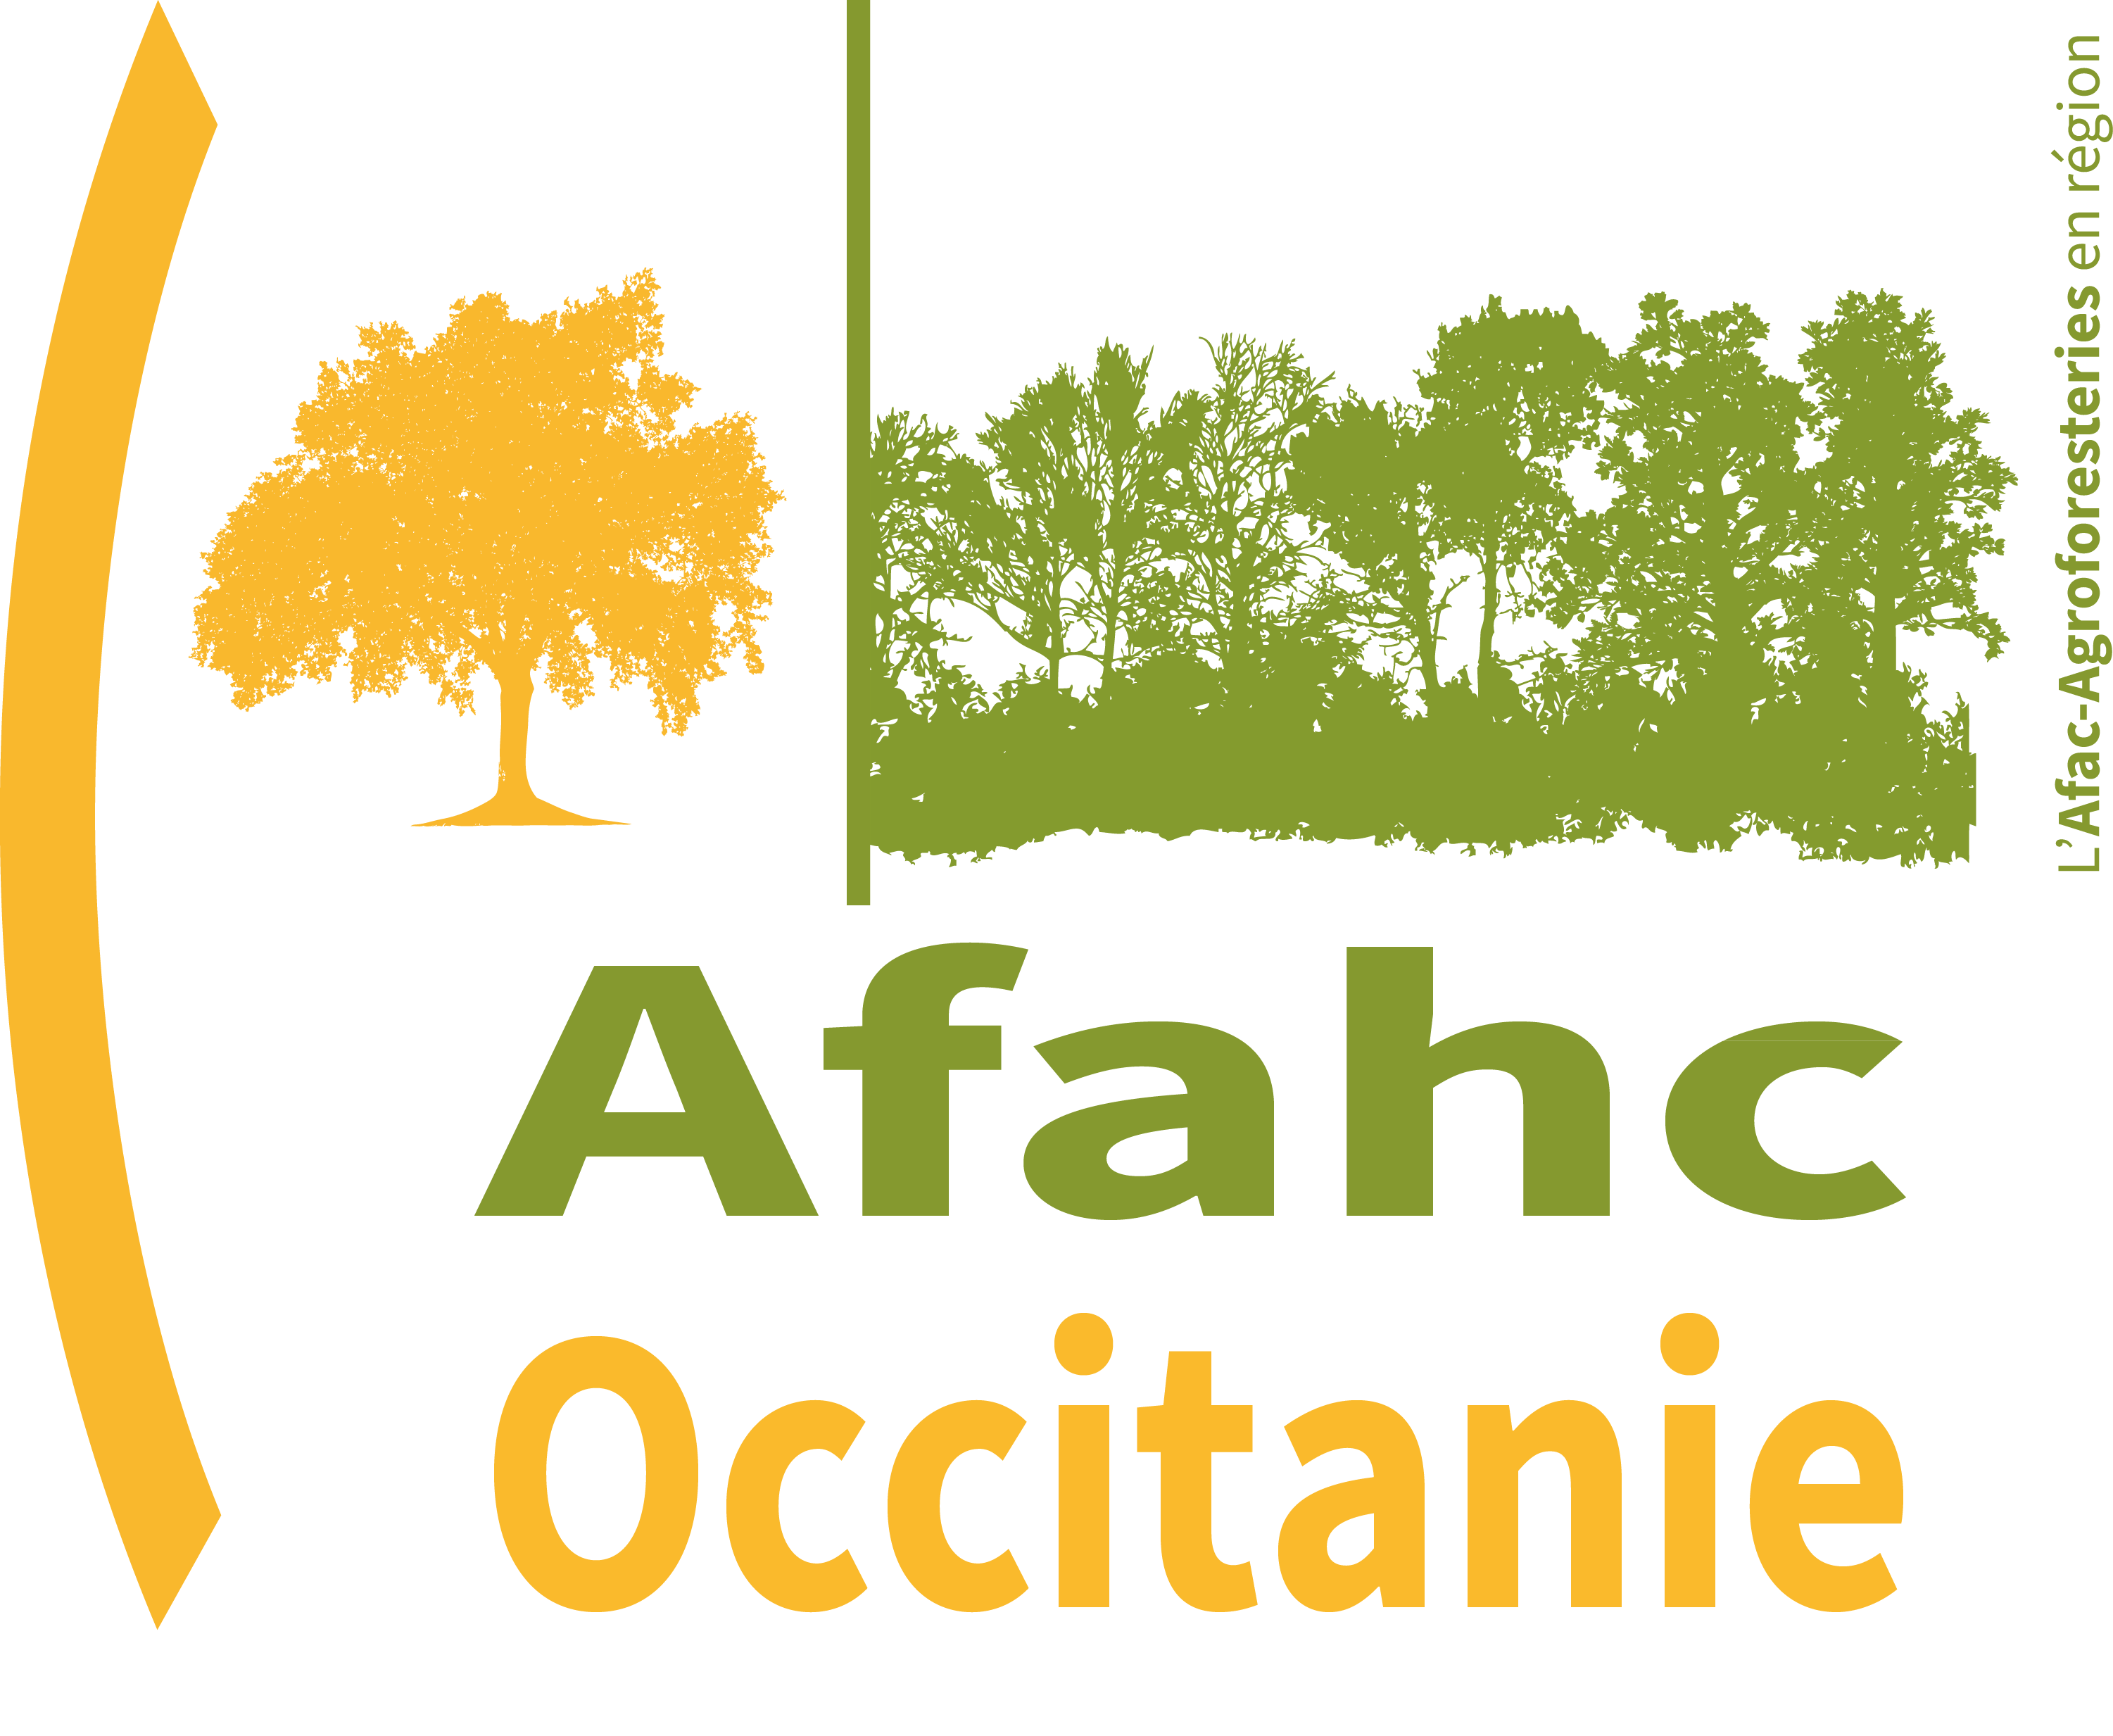 Afac Agroforesteries carré Occitanie